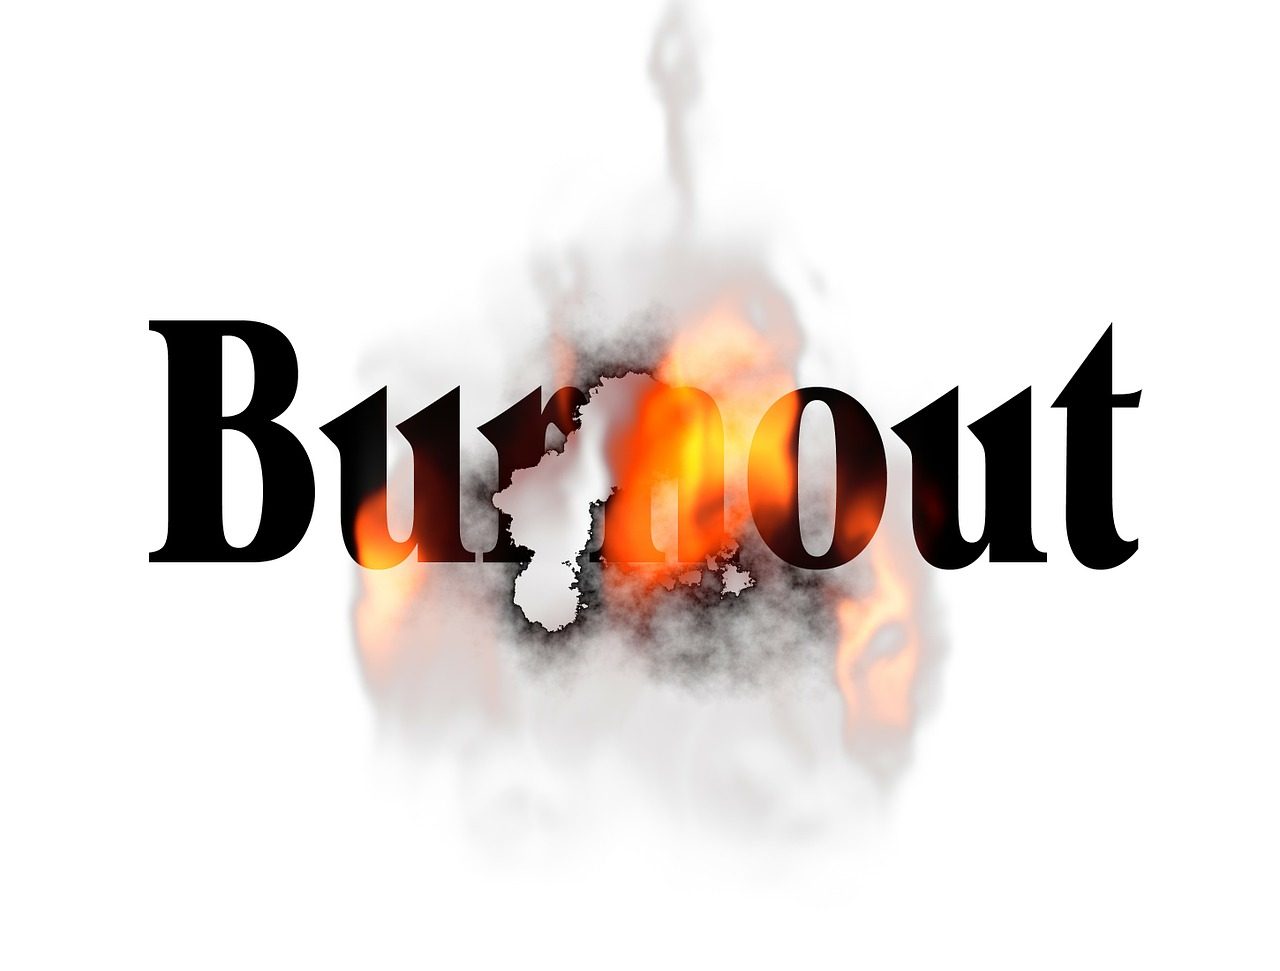 burnout-90345_1280-1280x971.jpg